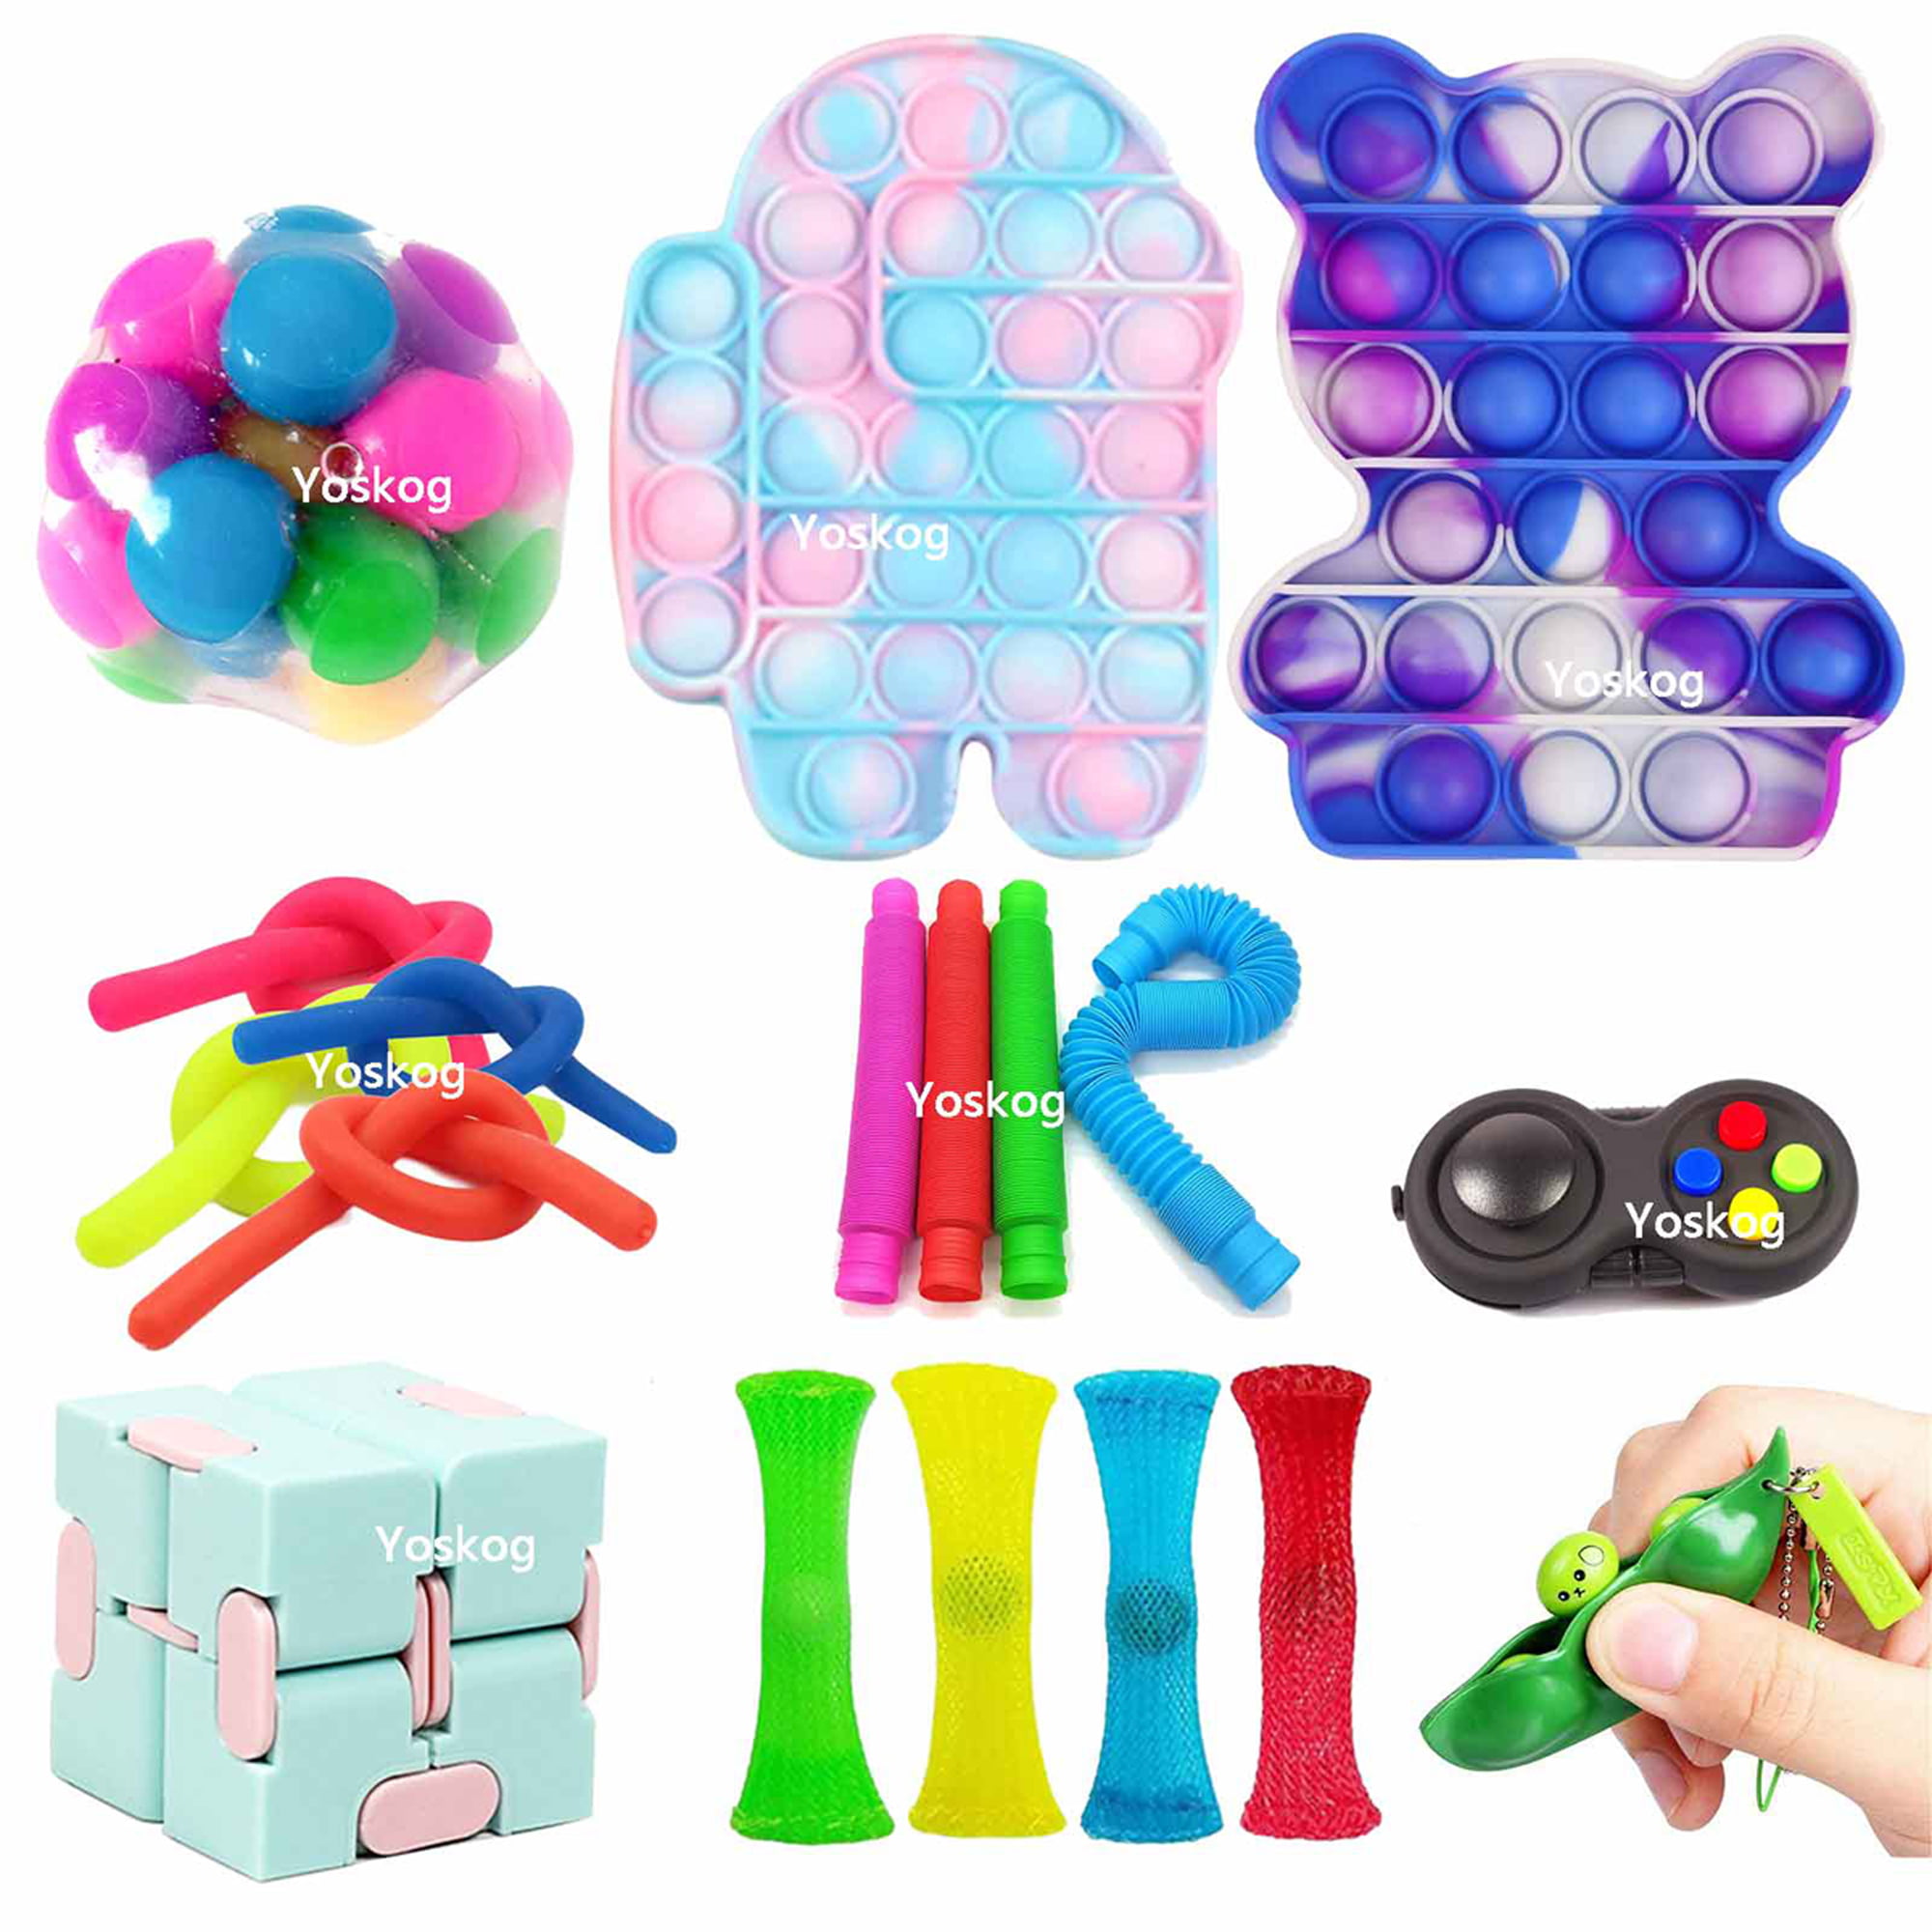 Details about   4PCS Fidget Toys Set Sensory Tools Bundle Stress Relief Push Cubble Fidget Toy 